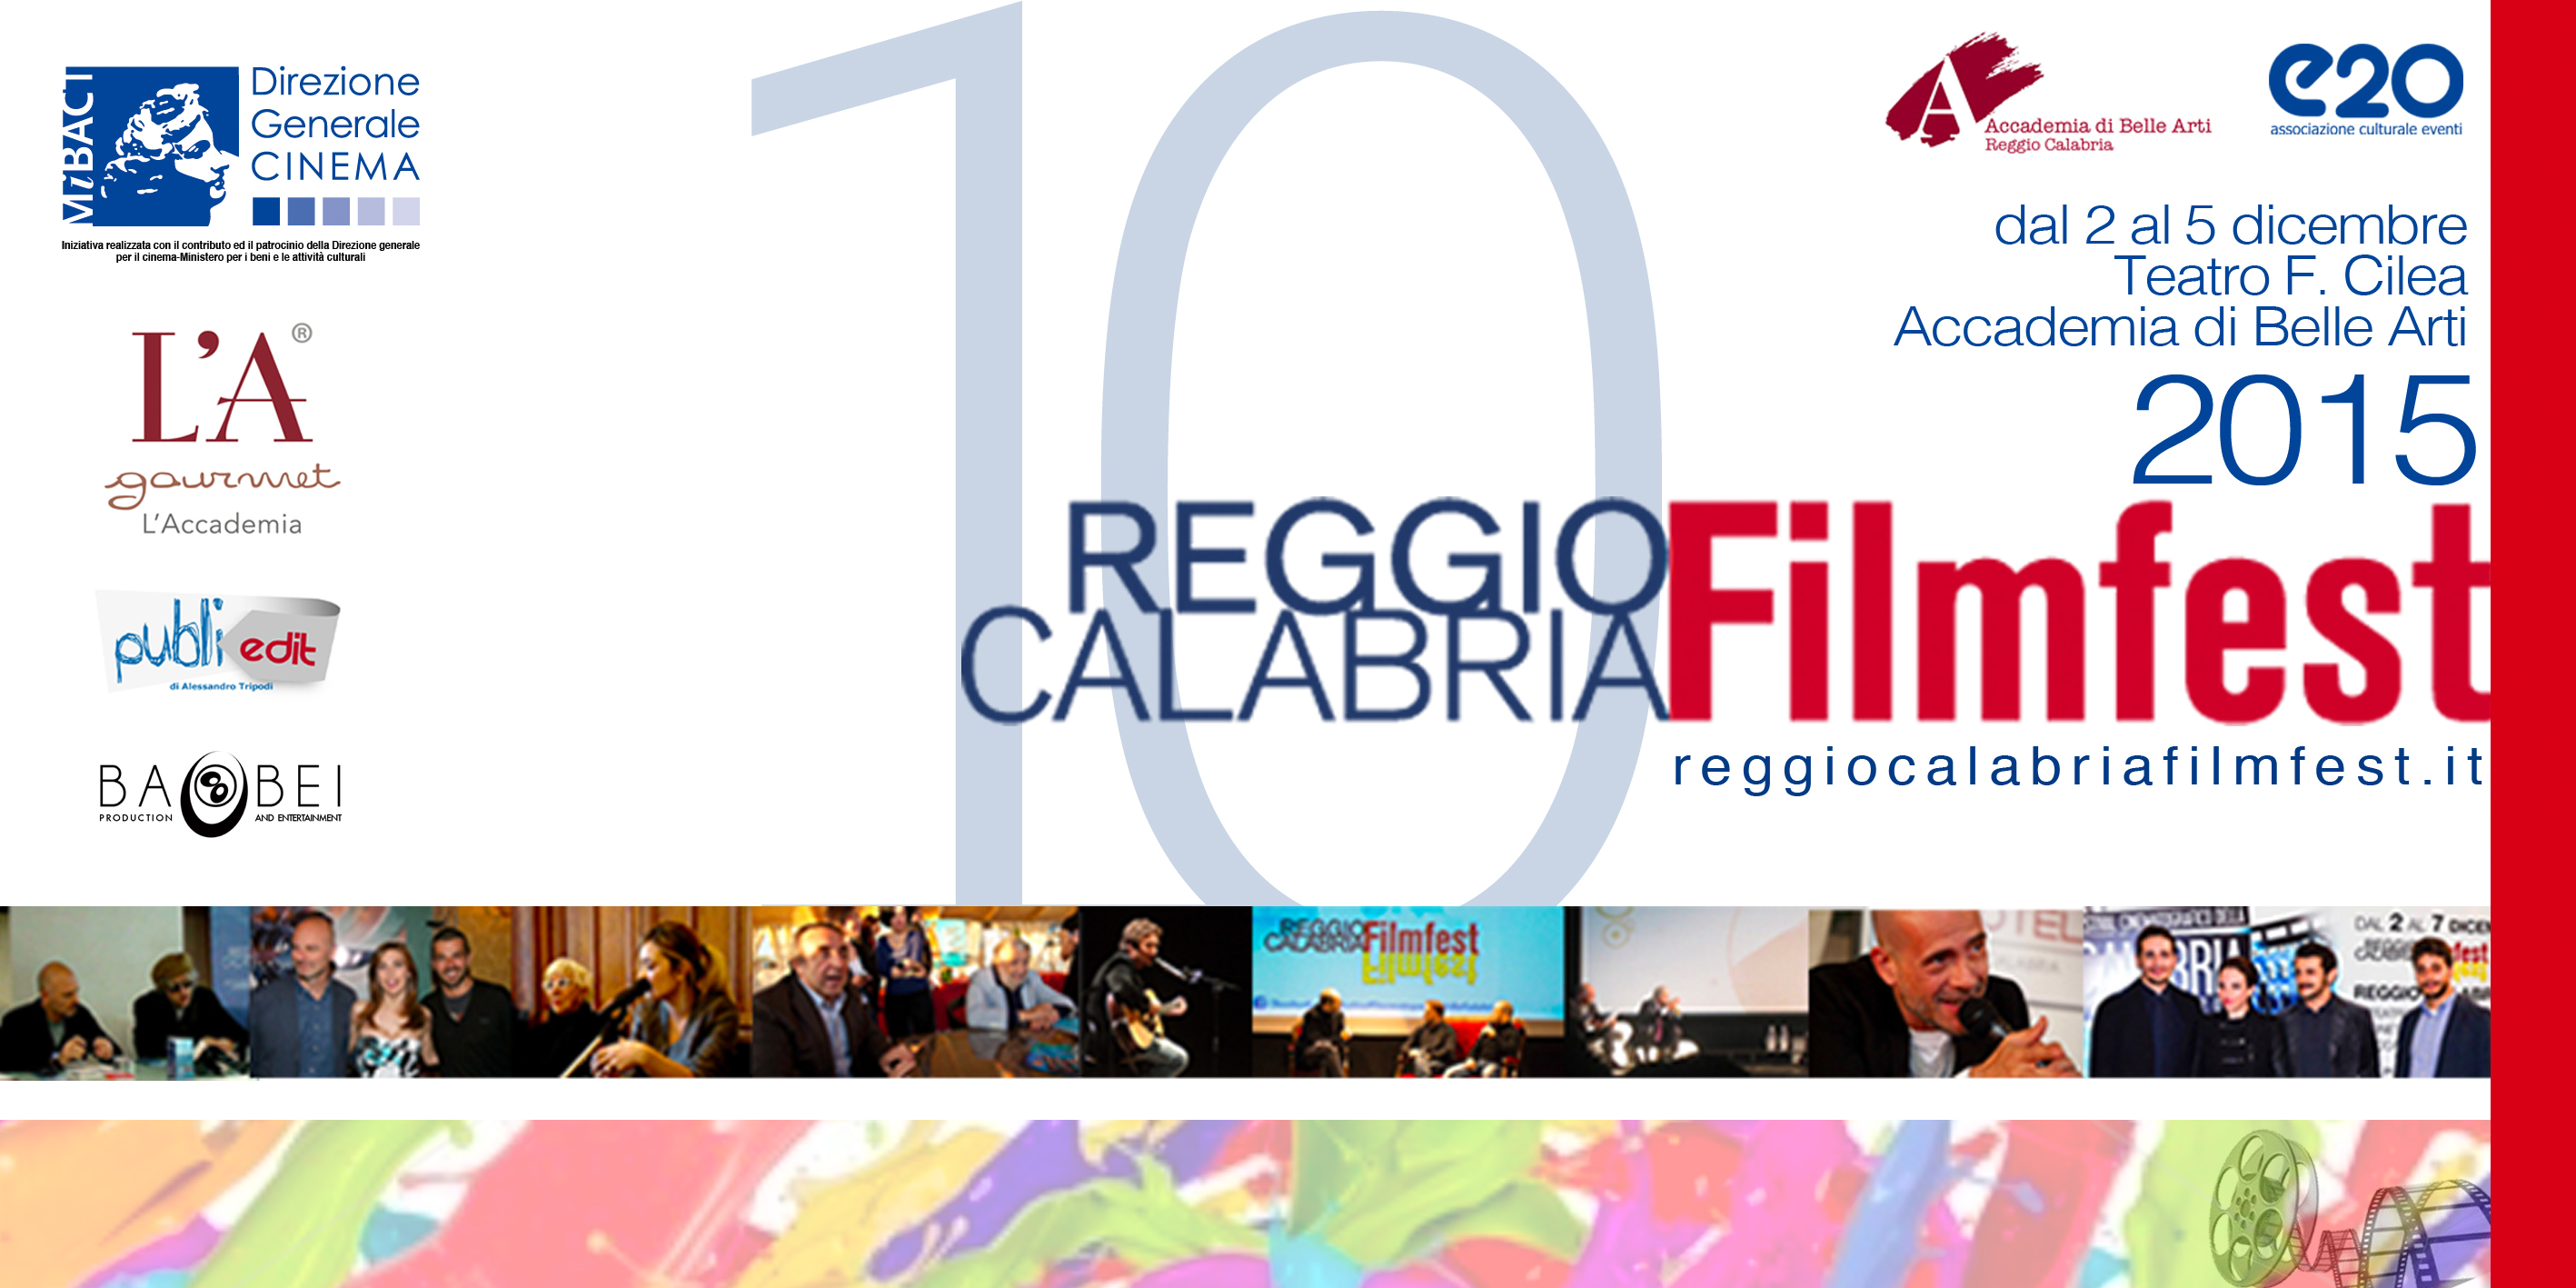 Reggio film fest